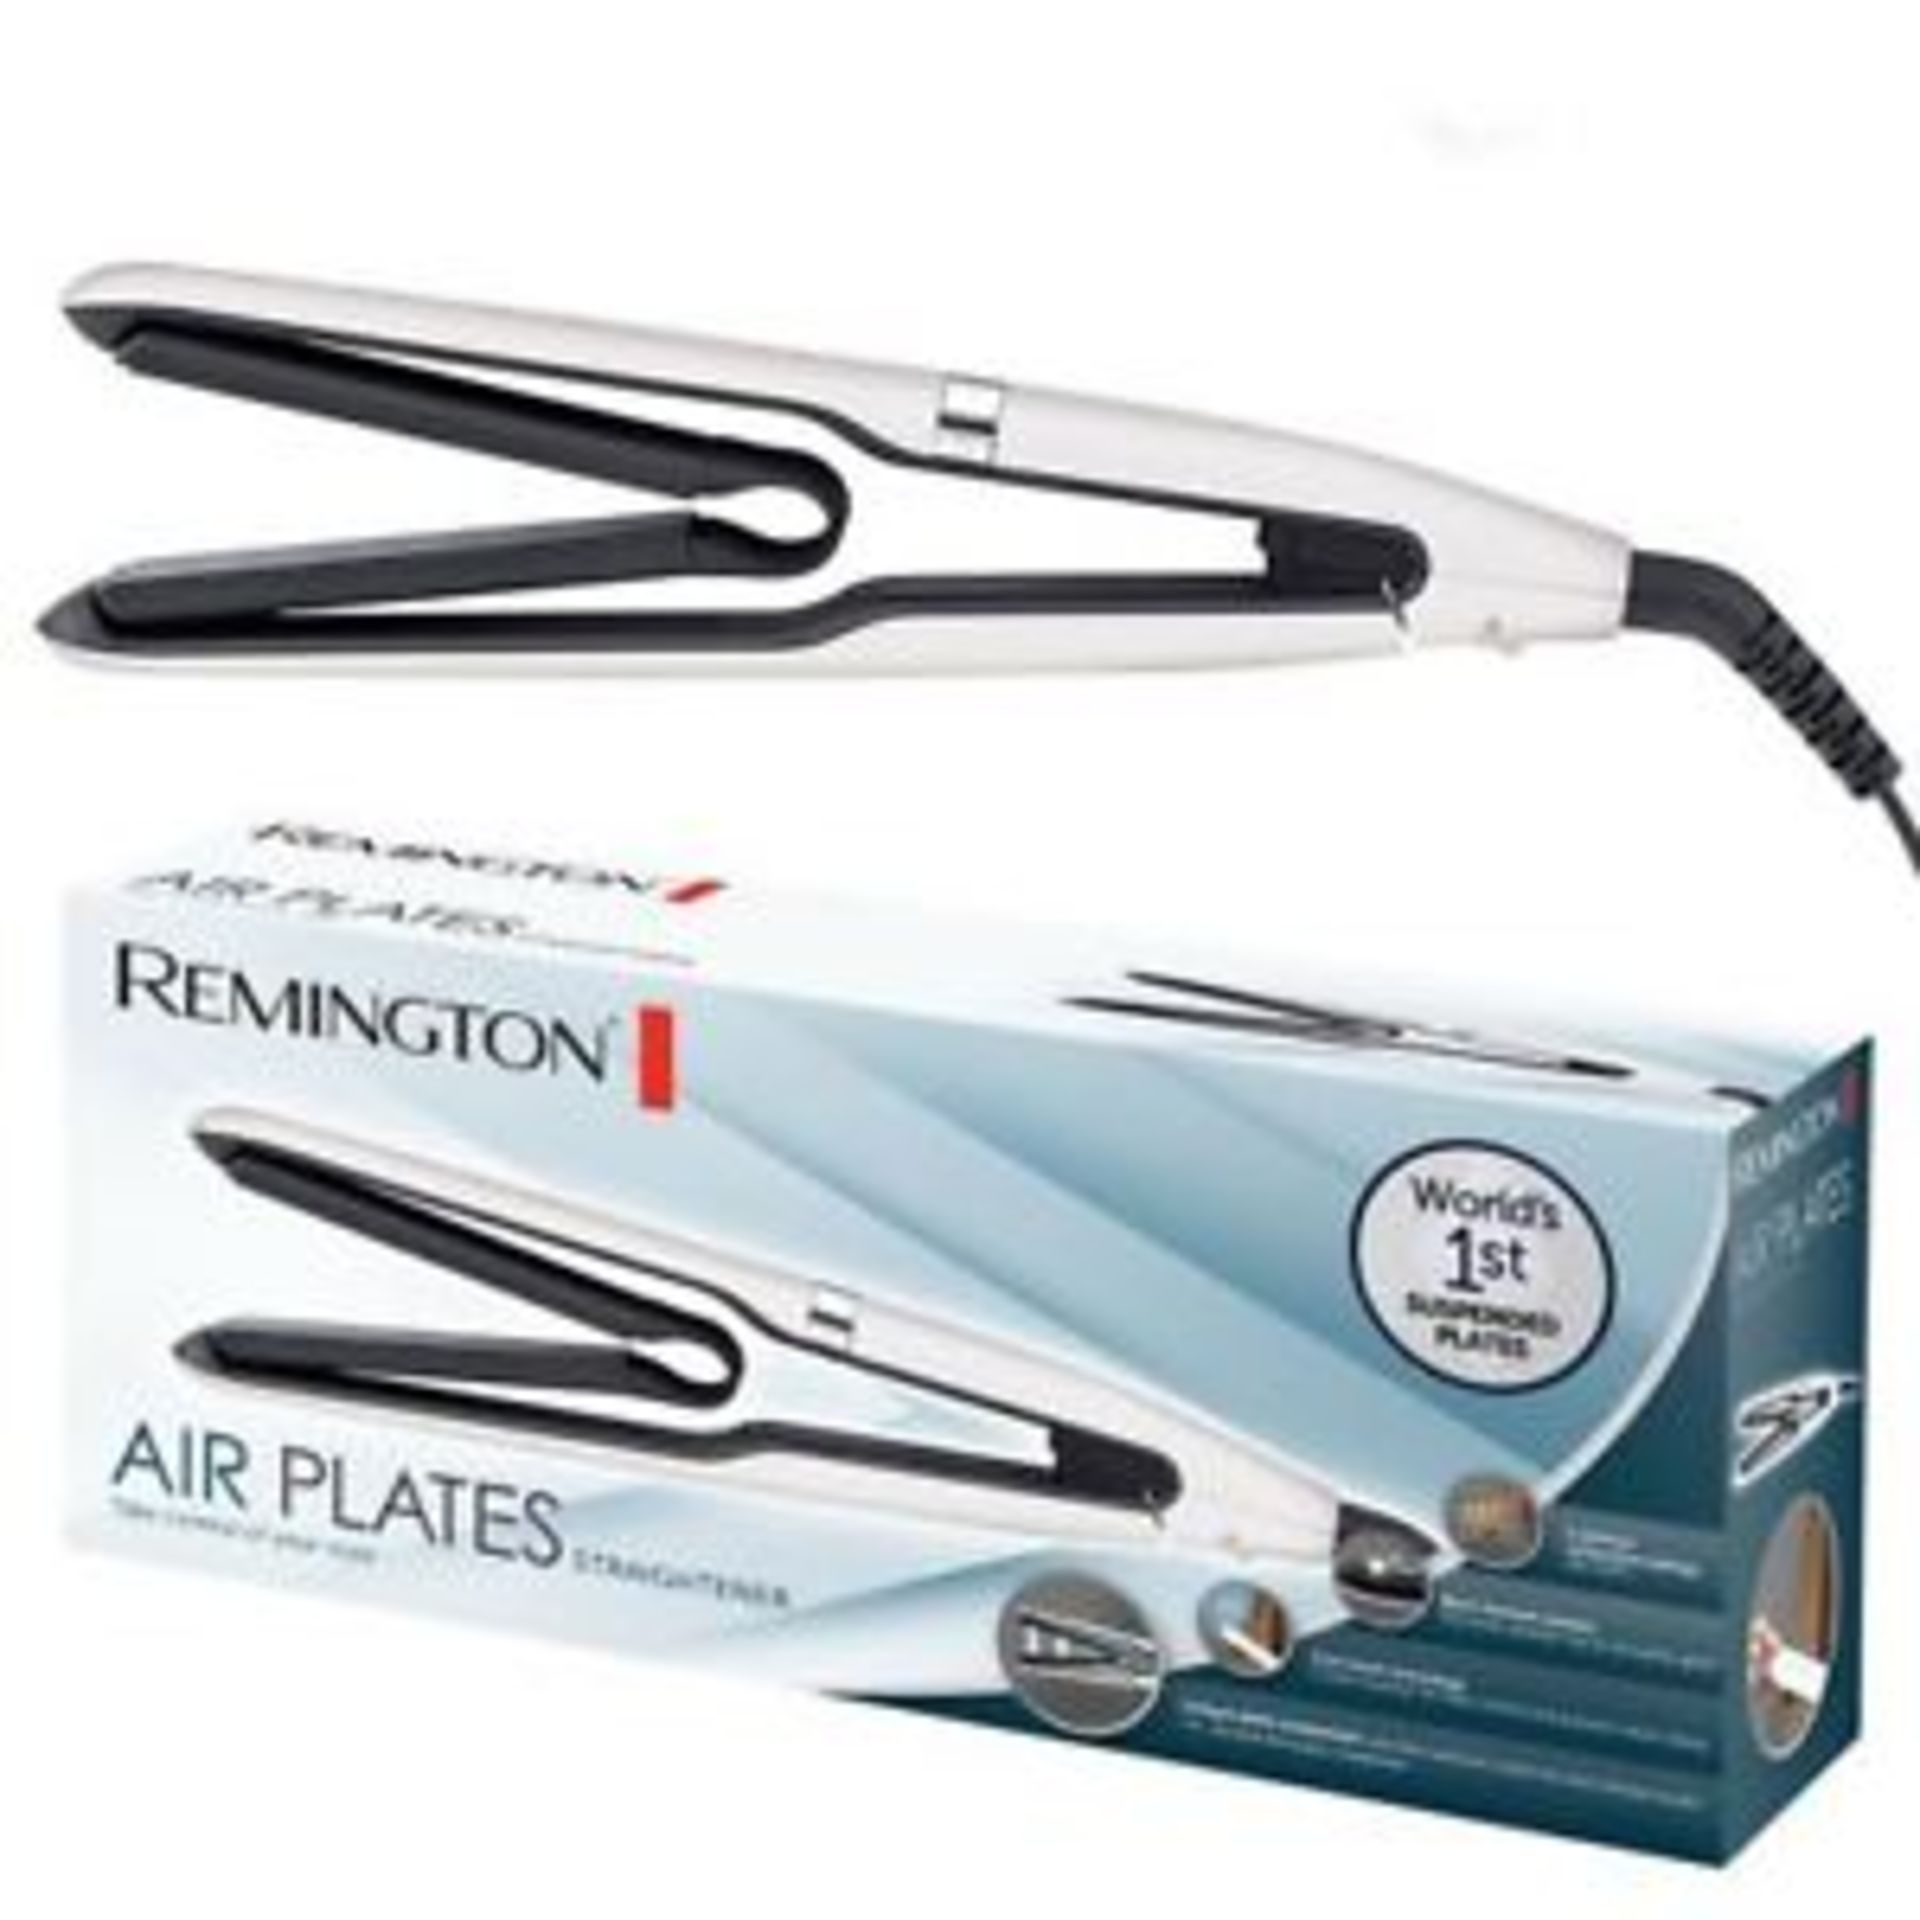 + VAT Brand New Remington Air Plates Straightener - Argos Price Â£79.99 - 5 Optimum Temperature - Image 3 of 4